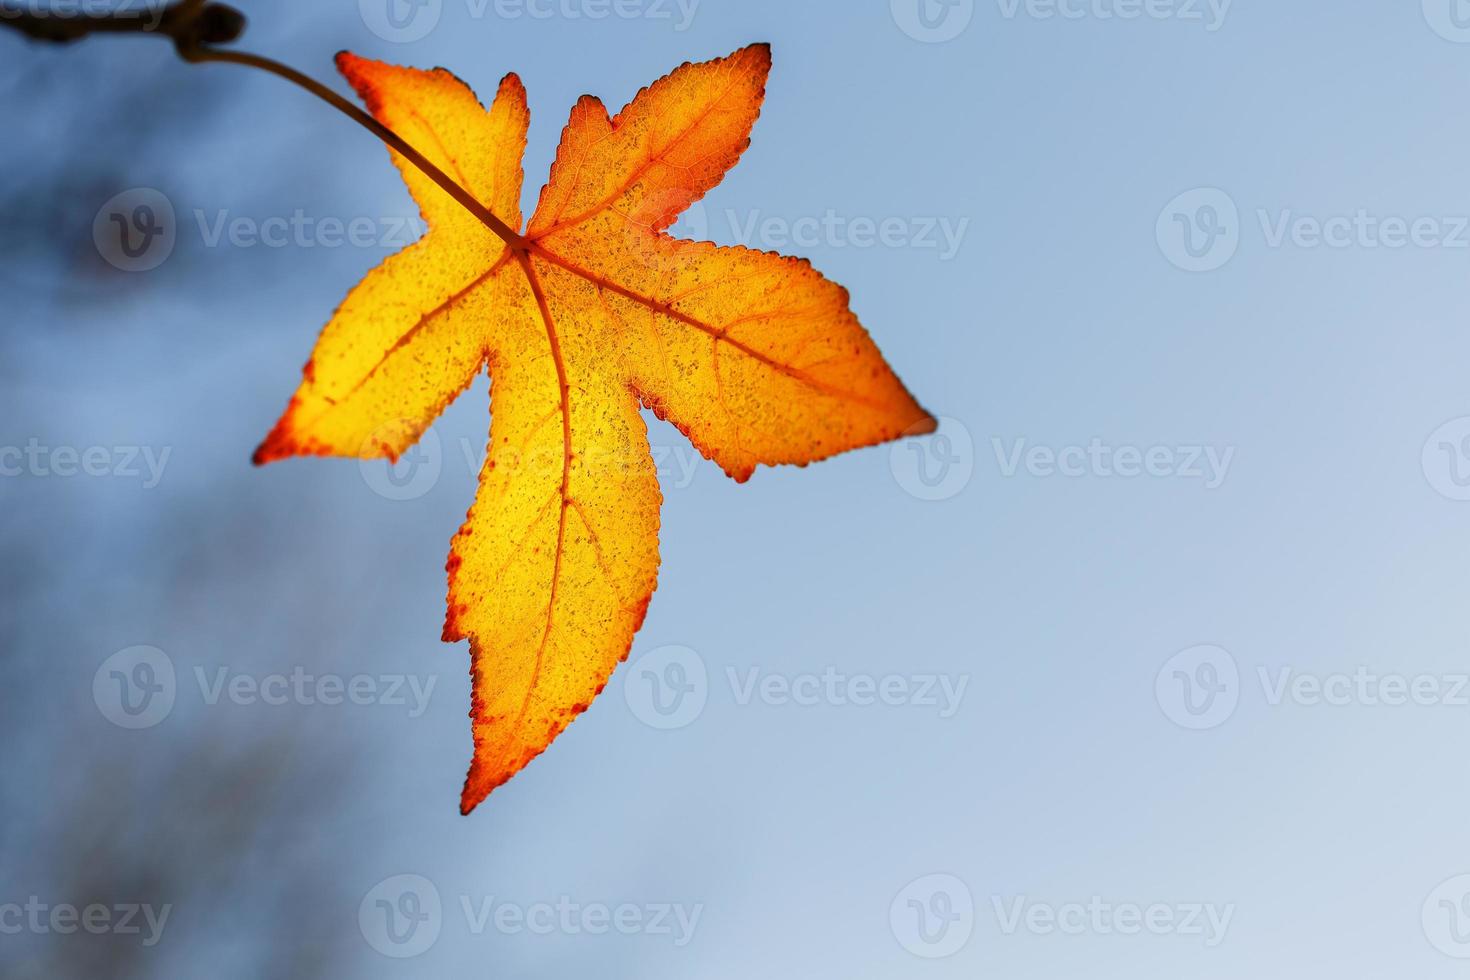 feuille d'automne, vieilles feuilles d'érable orange, feuillage sec des arbres, mise au point douce, saison d'automne, changement de nature, lumière du soleil douce et lumineuse photo